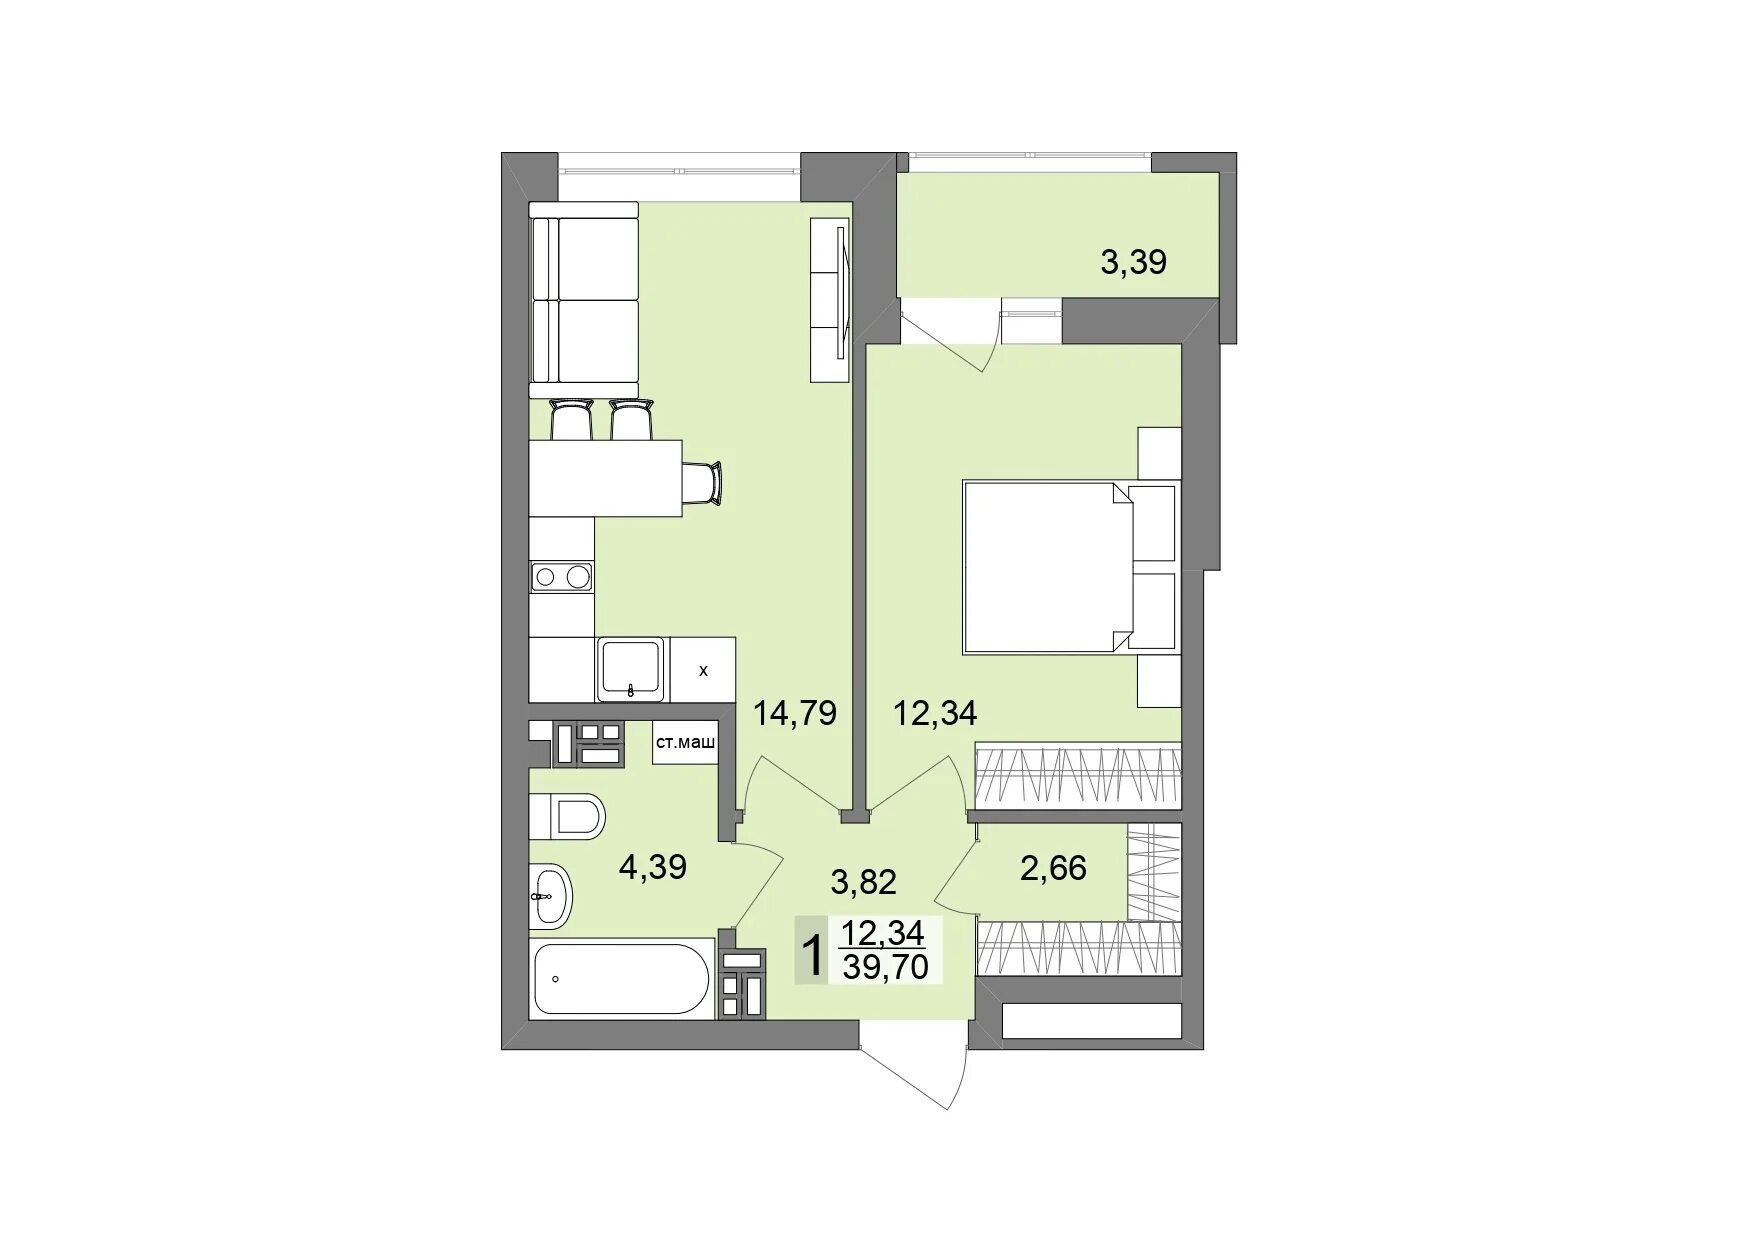 Новый виз екатеринбург квартиры. ЖК новый виз. Планировка новых квартир 140 кв метров. Времена года 2 планировки.